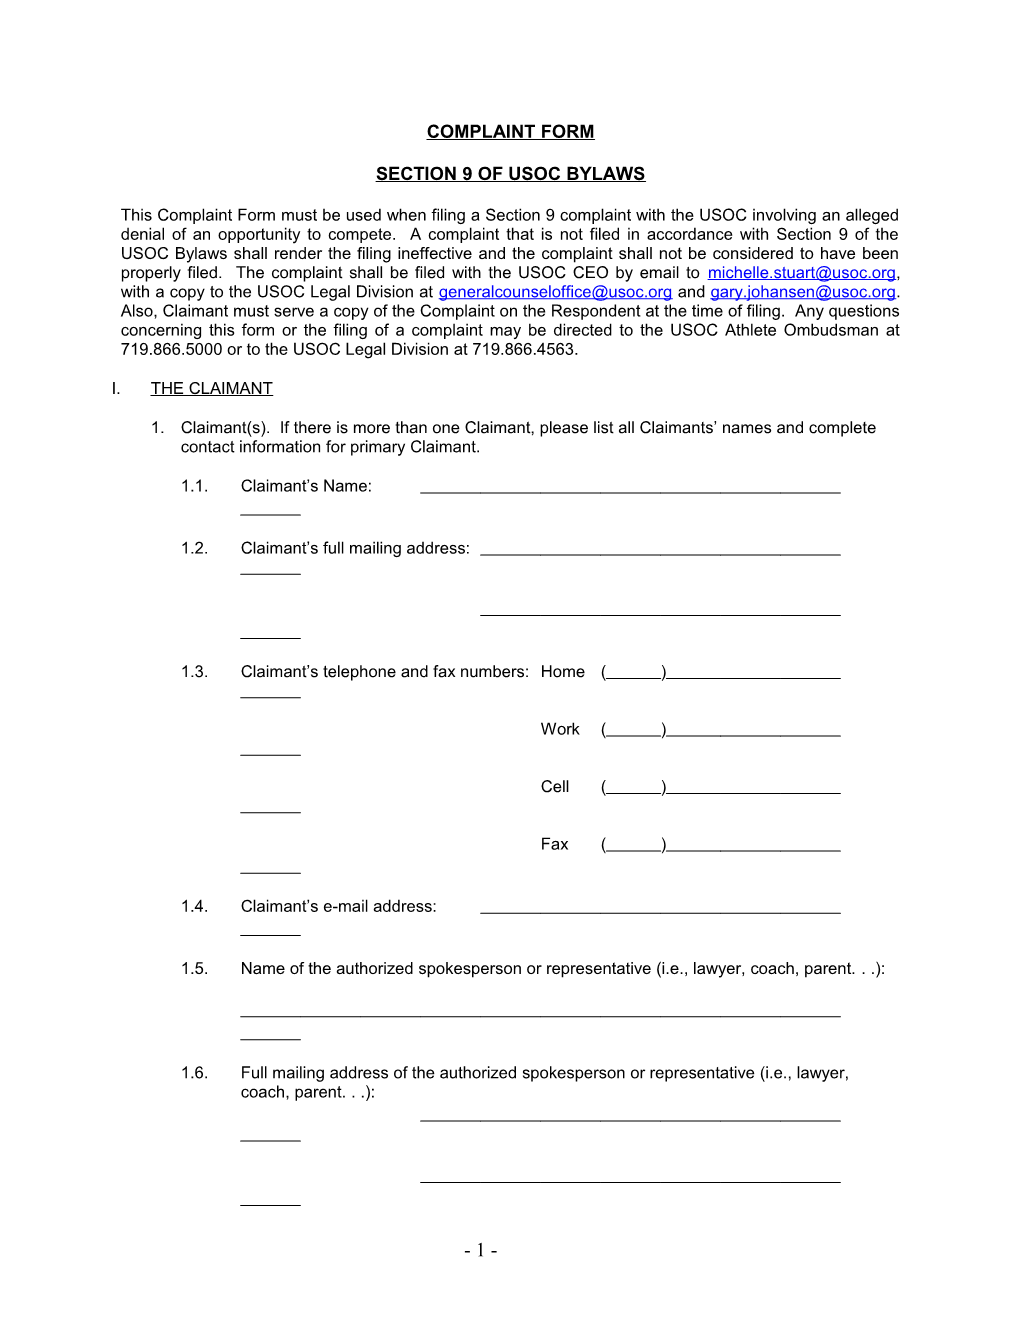 Section Ix Complaint Form